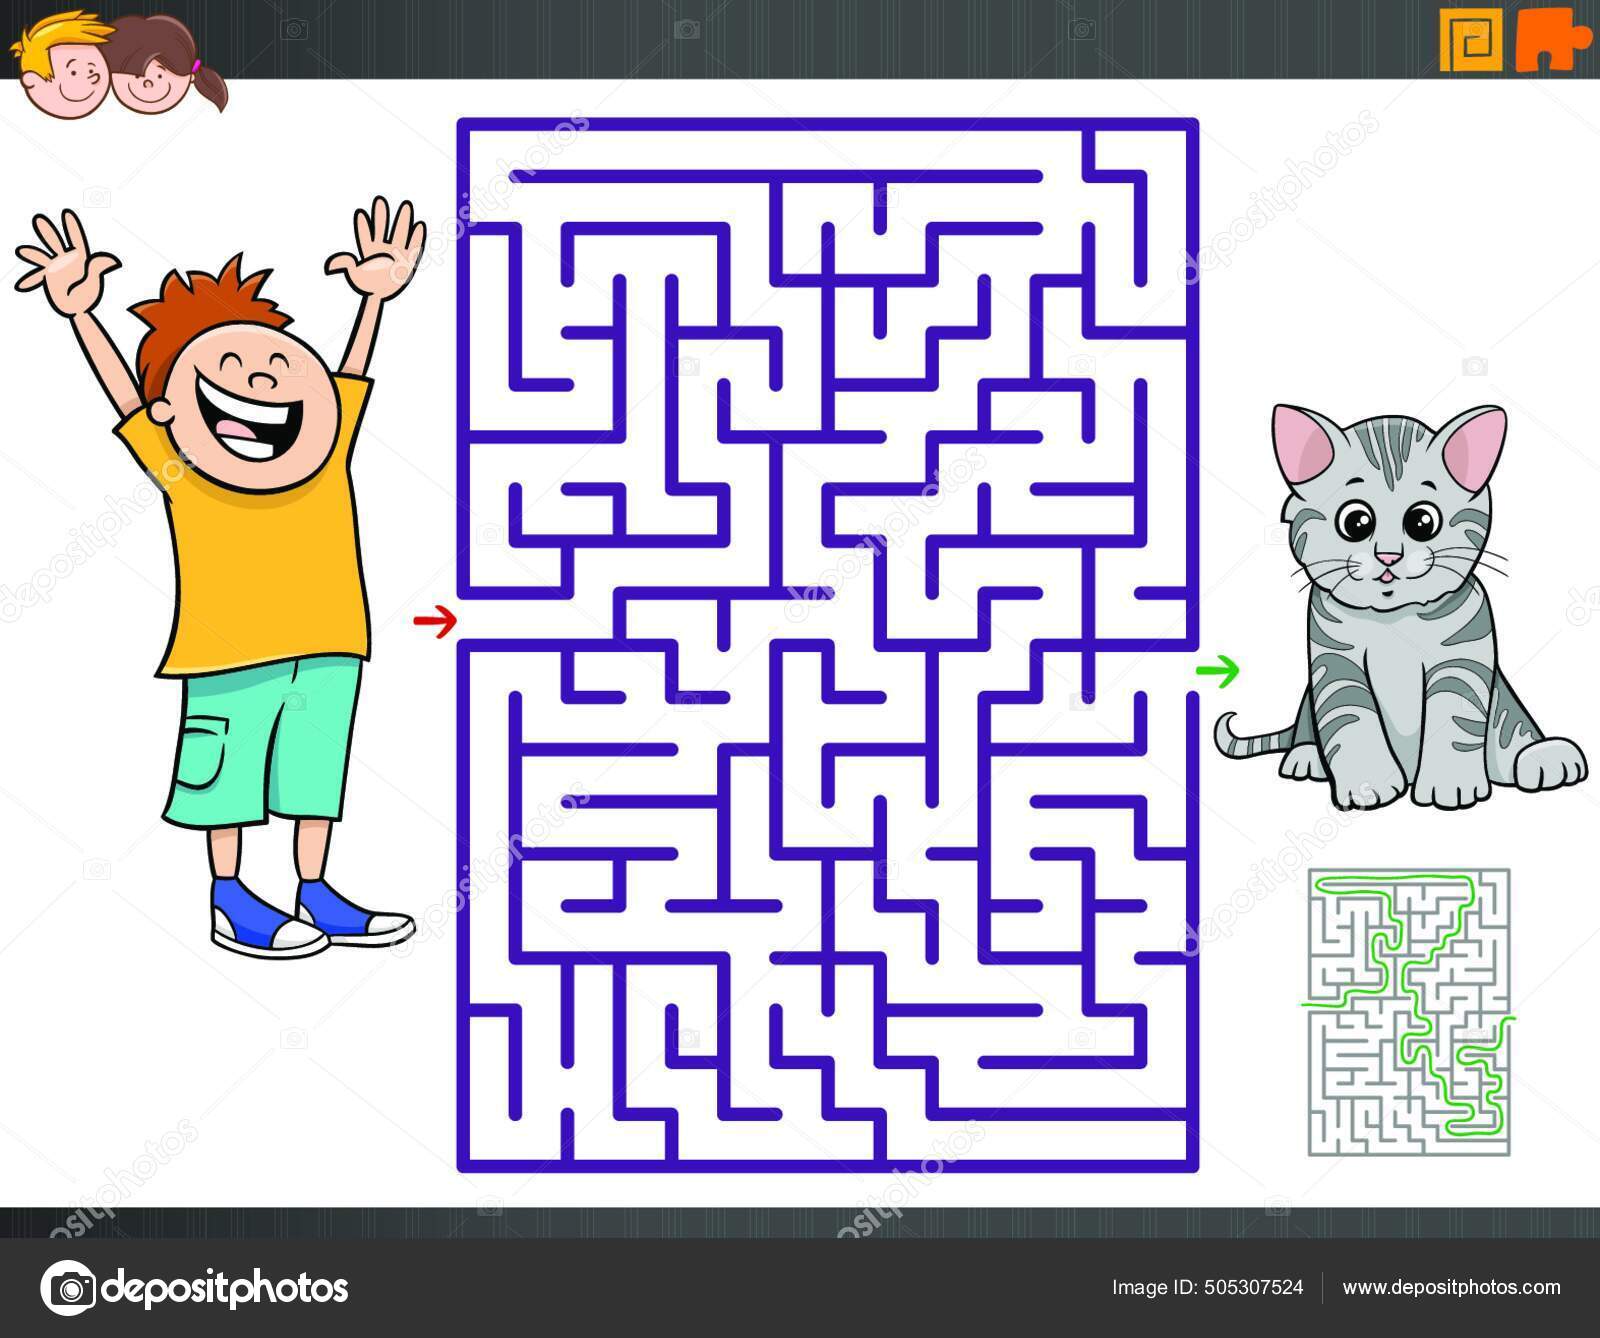 Jogo educativo de labirinto com pintor de desenho animado e sua